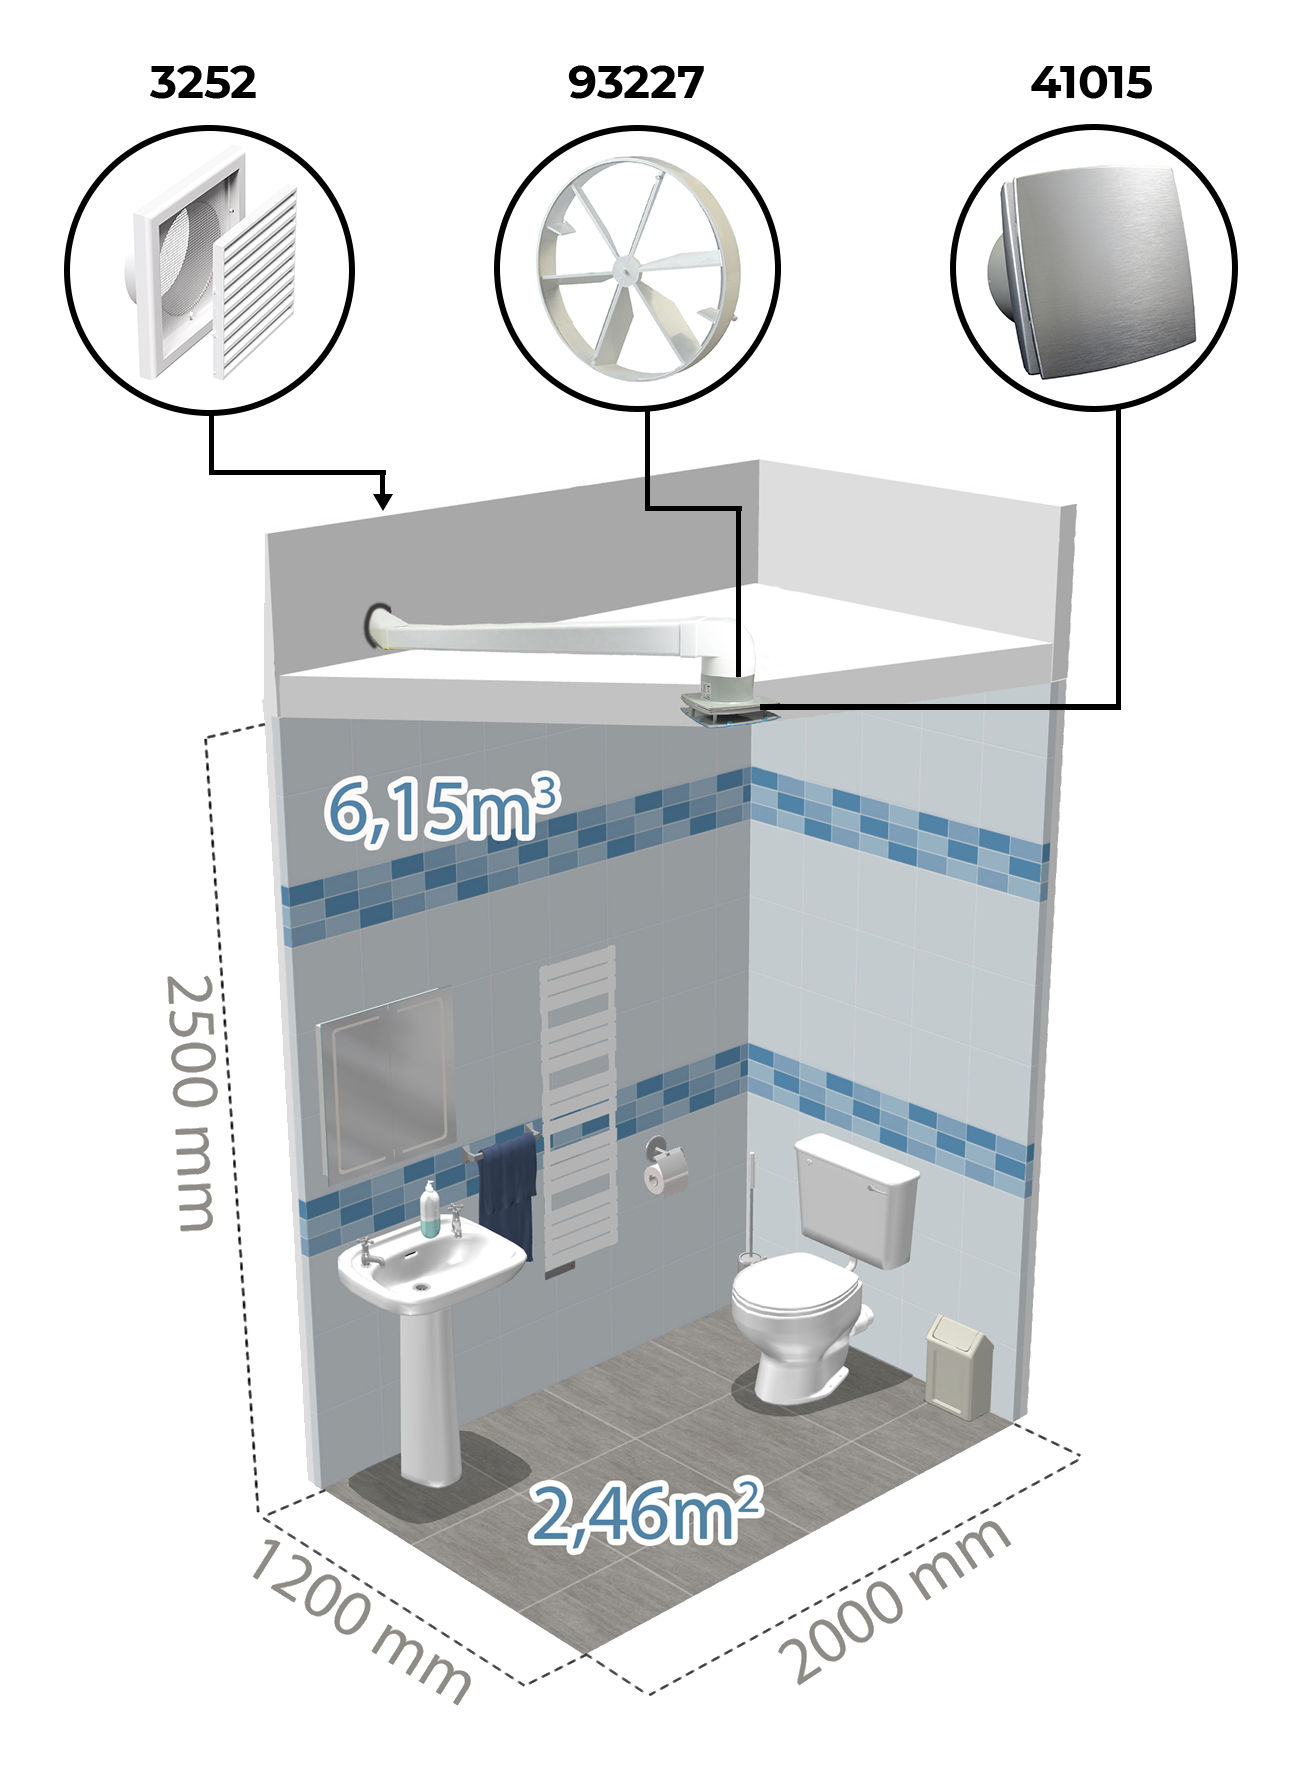 Példa légtechnikai berendezés felhasználására toalett-ben Dalap BF fürdőszoba ventilátorral.